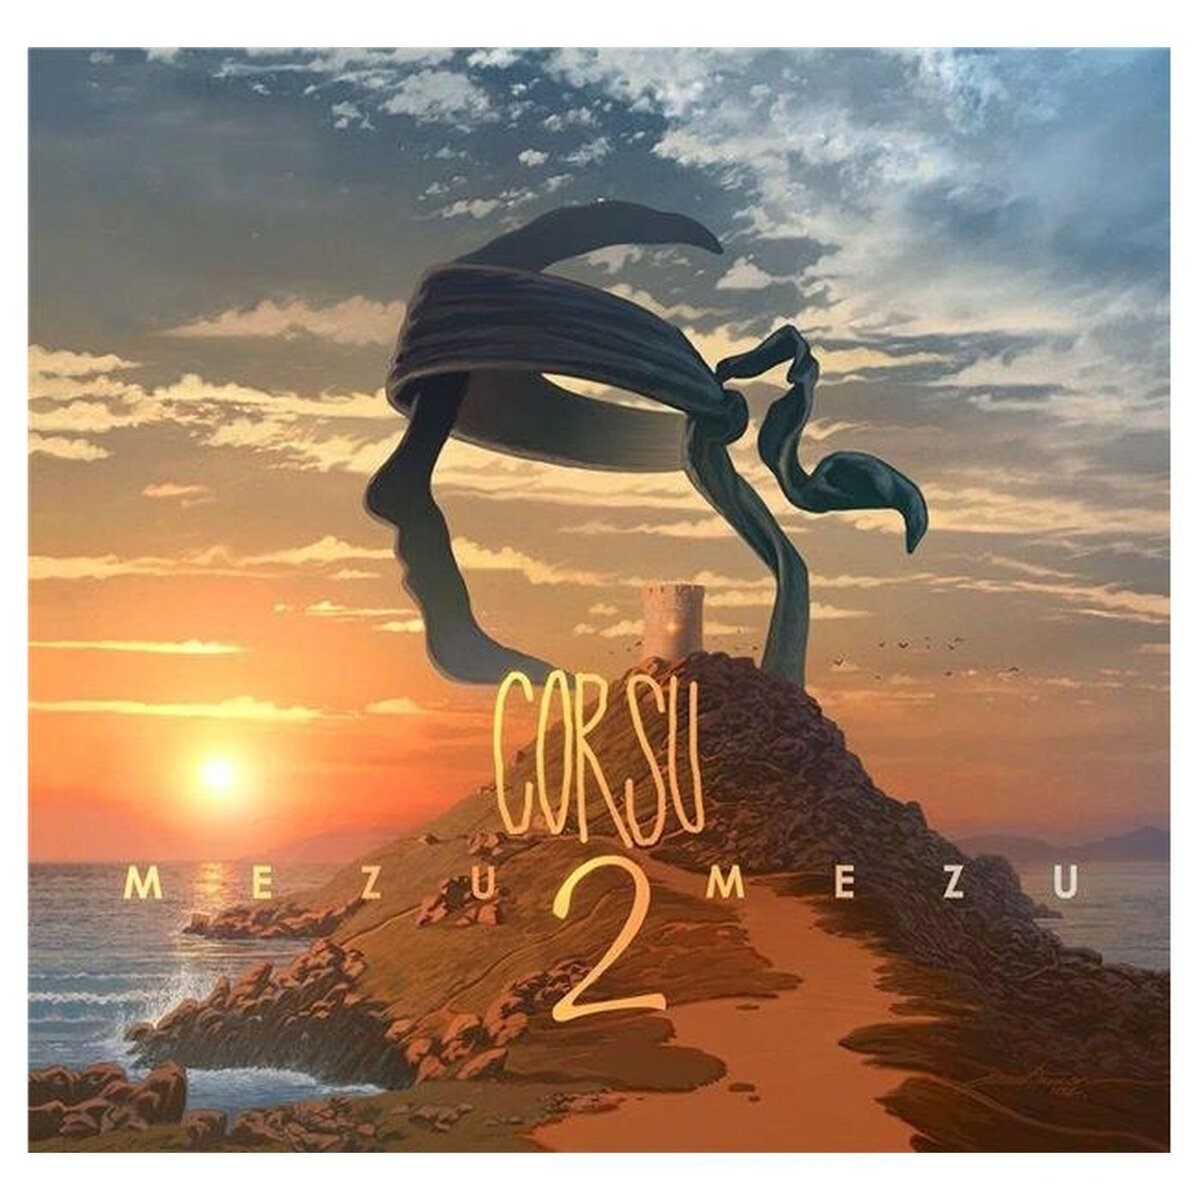 Corsu - Mezu Mezu 2 CD